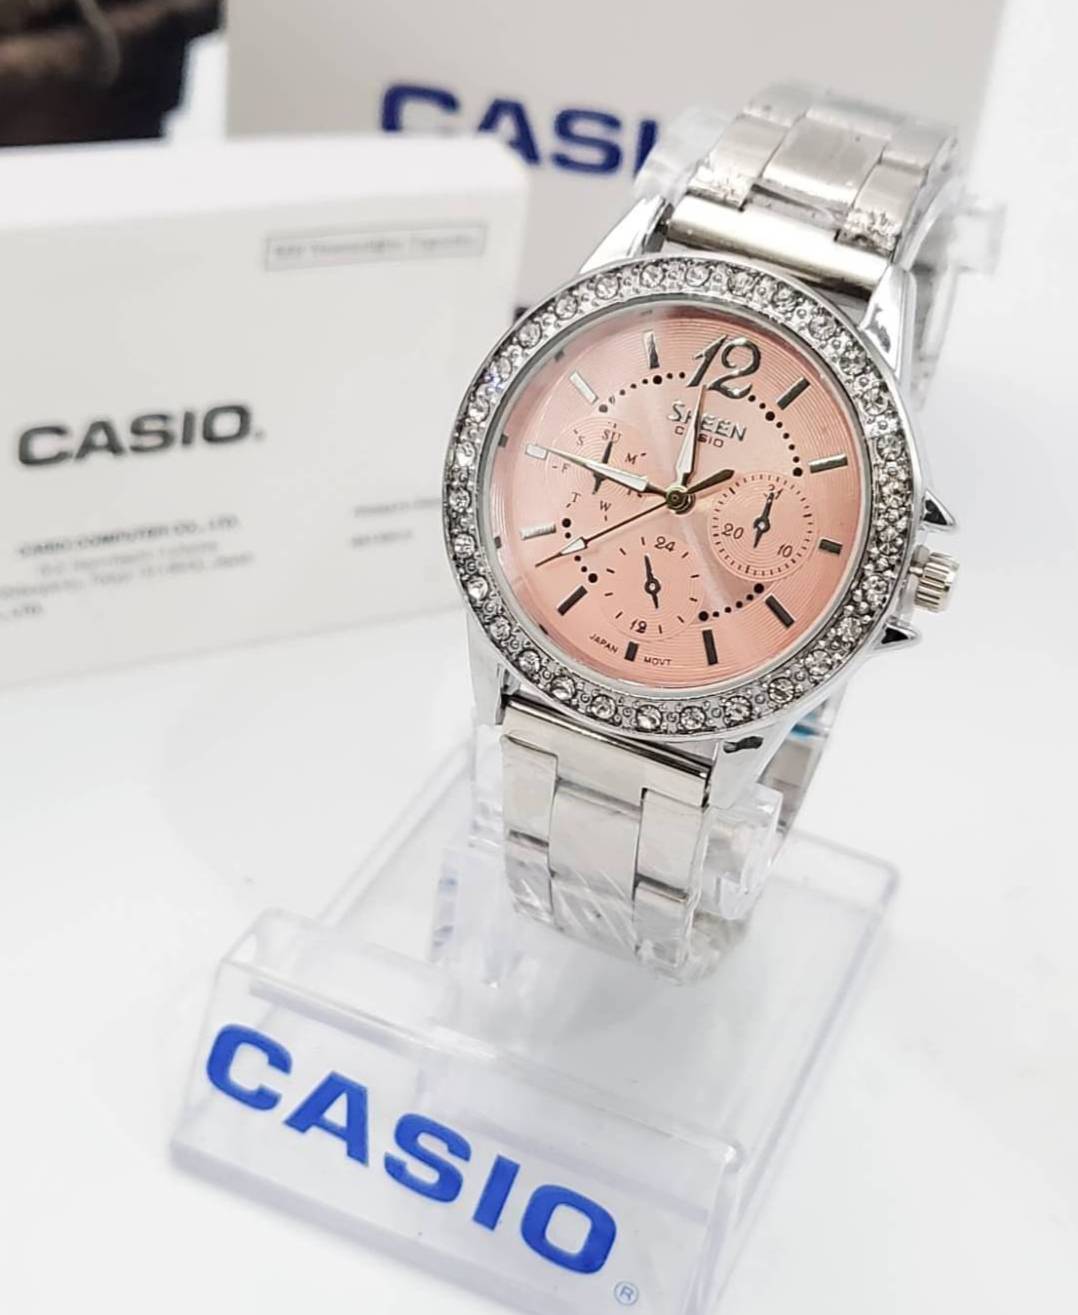 นาฬิกา นาฬิกาข้อมือ นาฬิกาCasio Casio นาฬิกาคาสิโอ คาสิโอ นาฬิกาผู้หญิง แฟชั่น ใส่ทำงาน ใส่ไปเรียน ผู้หญิง สวย หรูหรามากแม่ ใส่ได้ทุกวัน